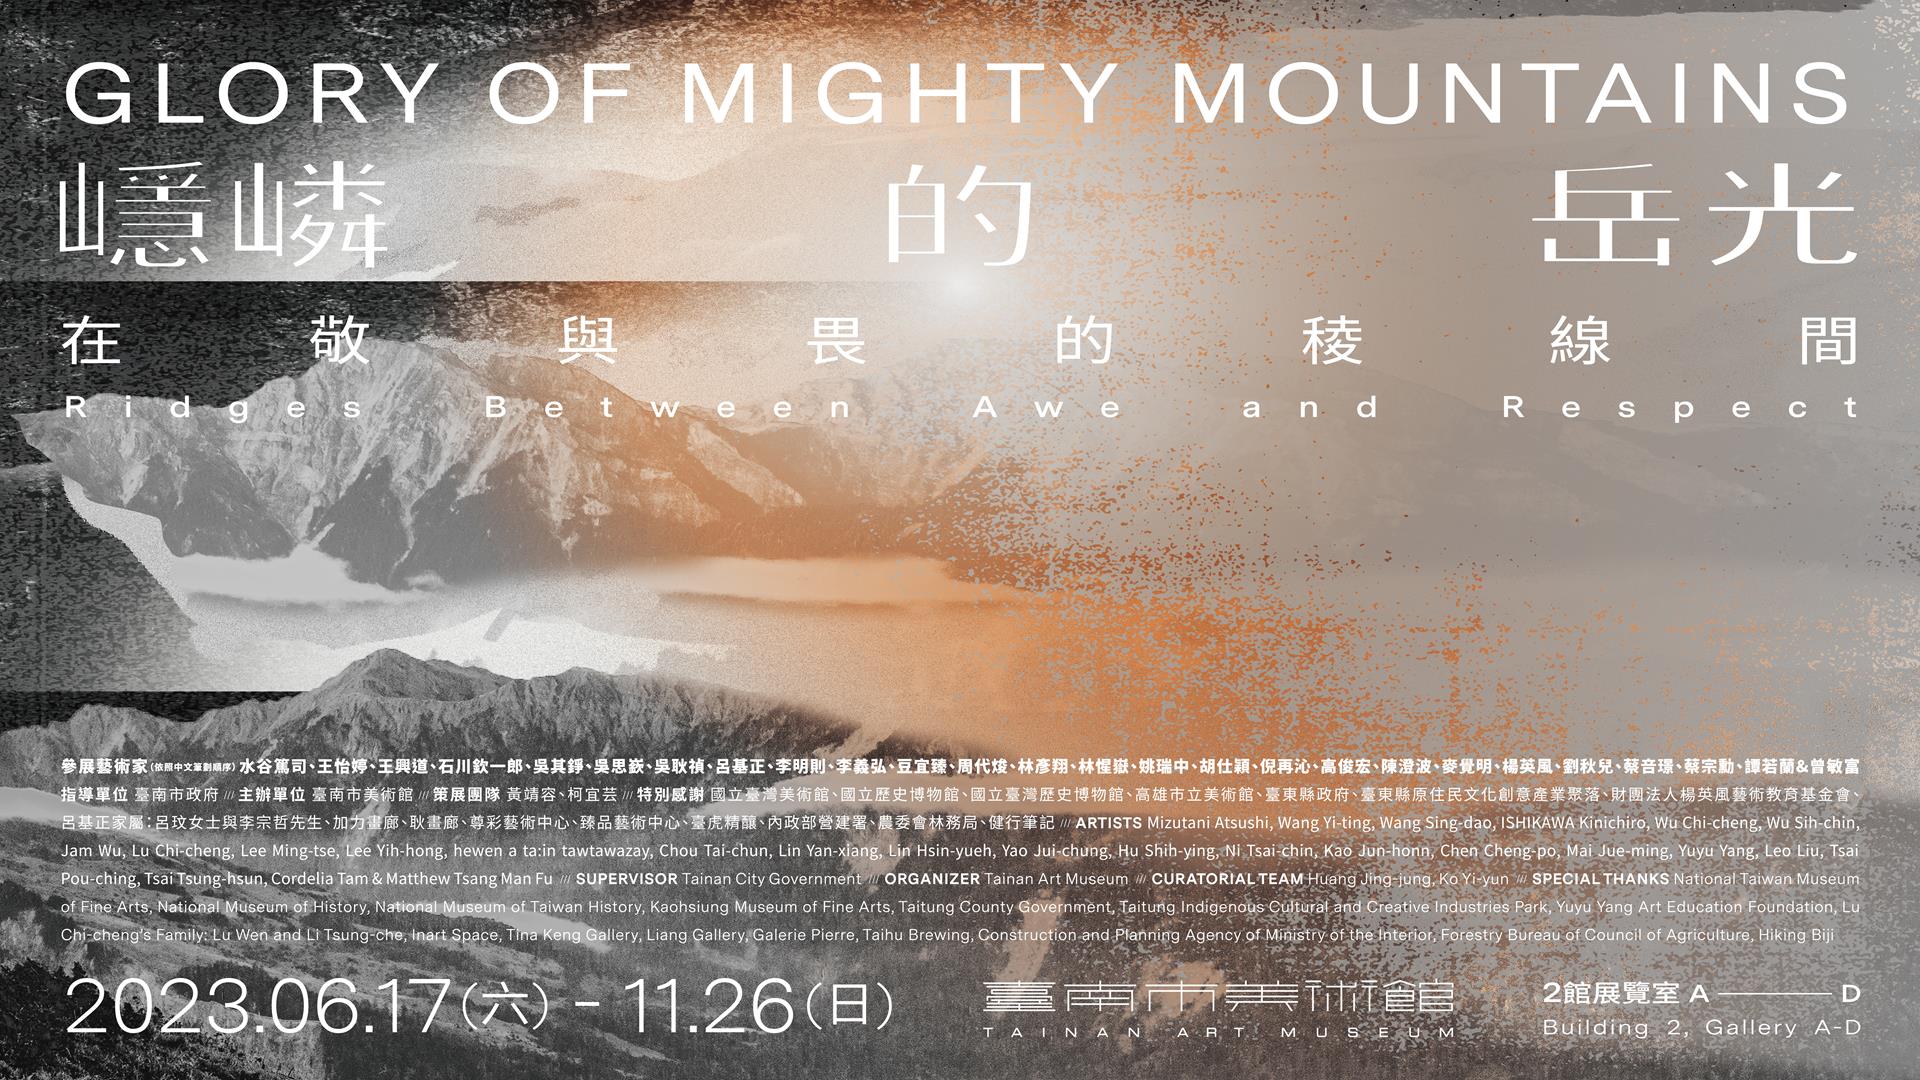 嶾嶙的岳光：在敬與畏的稜線間 Glory of Mighty Mountains: Ridges between Awe and Respect